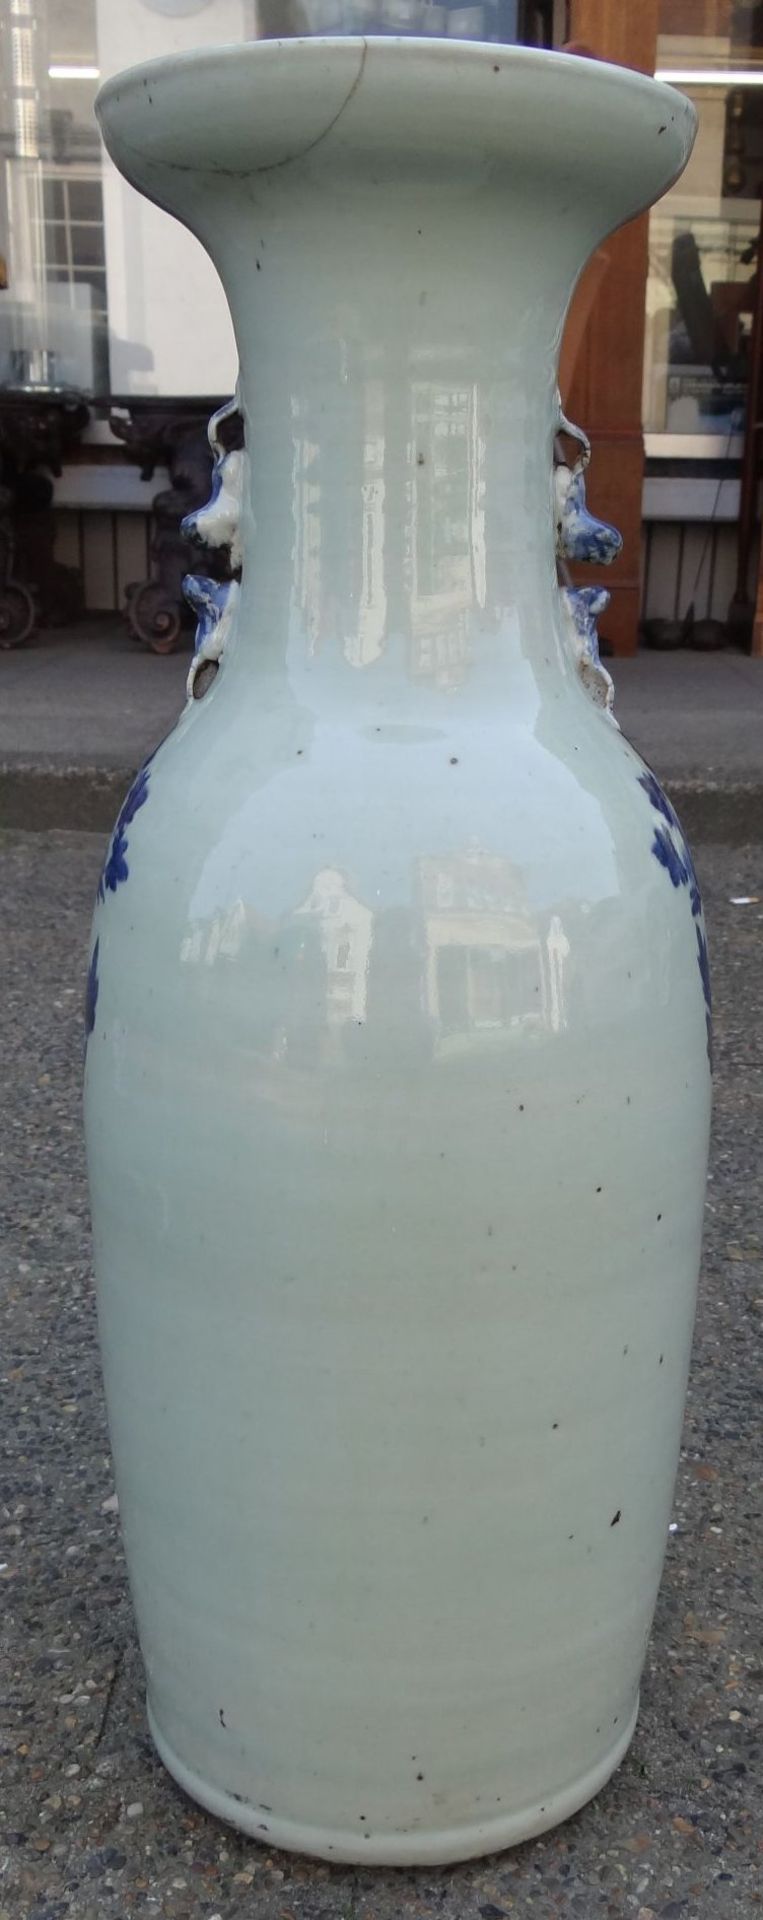 *hohe China-Vase mit Blaumalerei, älter, mehtrfach geklebt, Altrisse, H-58 cm, D-18 c - Bild 3 aus 8